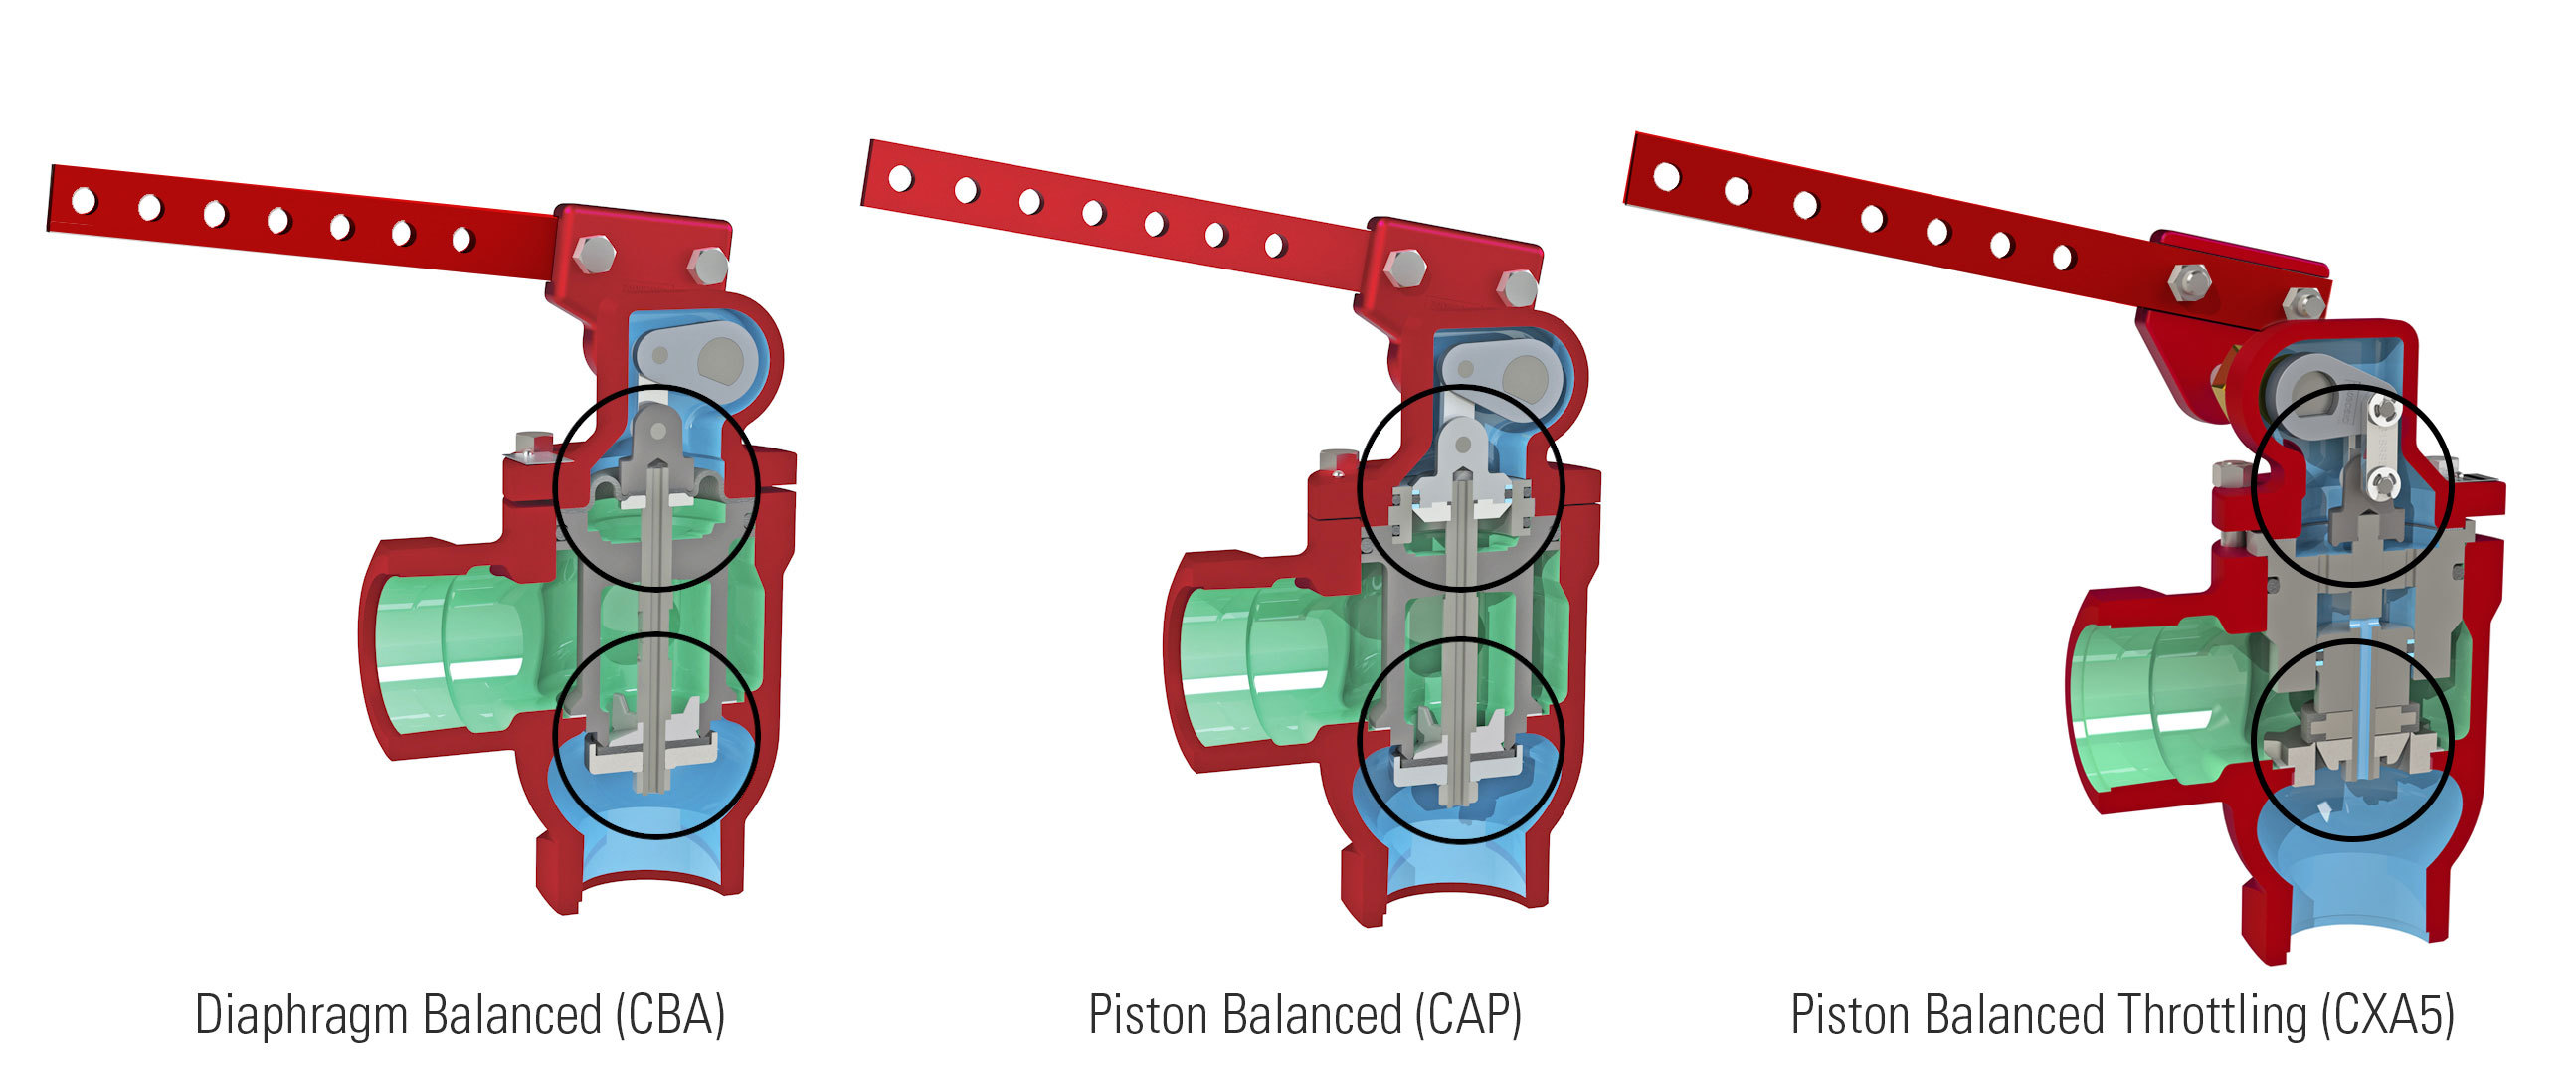 Types of Kimray Piston Balanced Throttling Mechanical Dump Valves